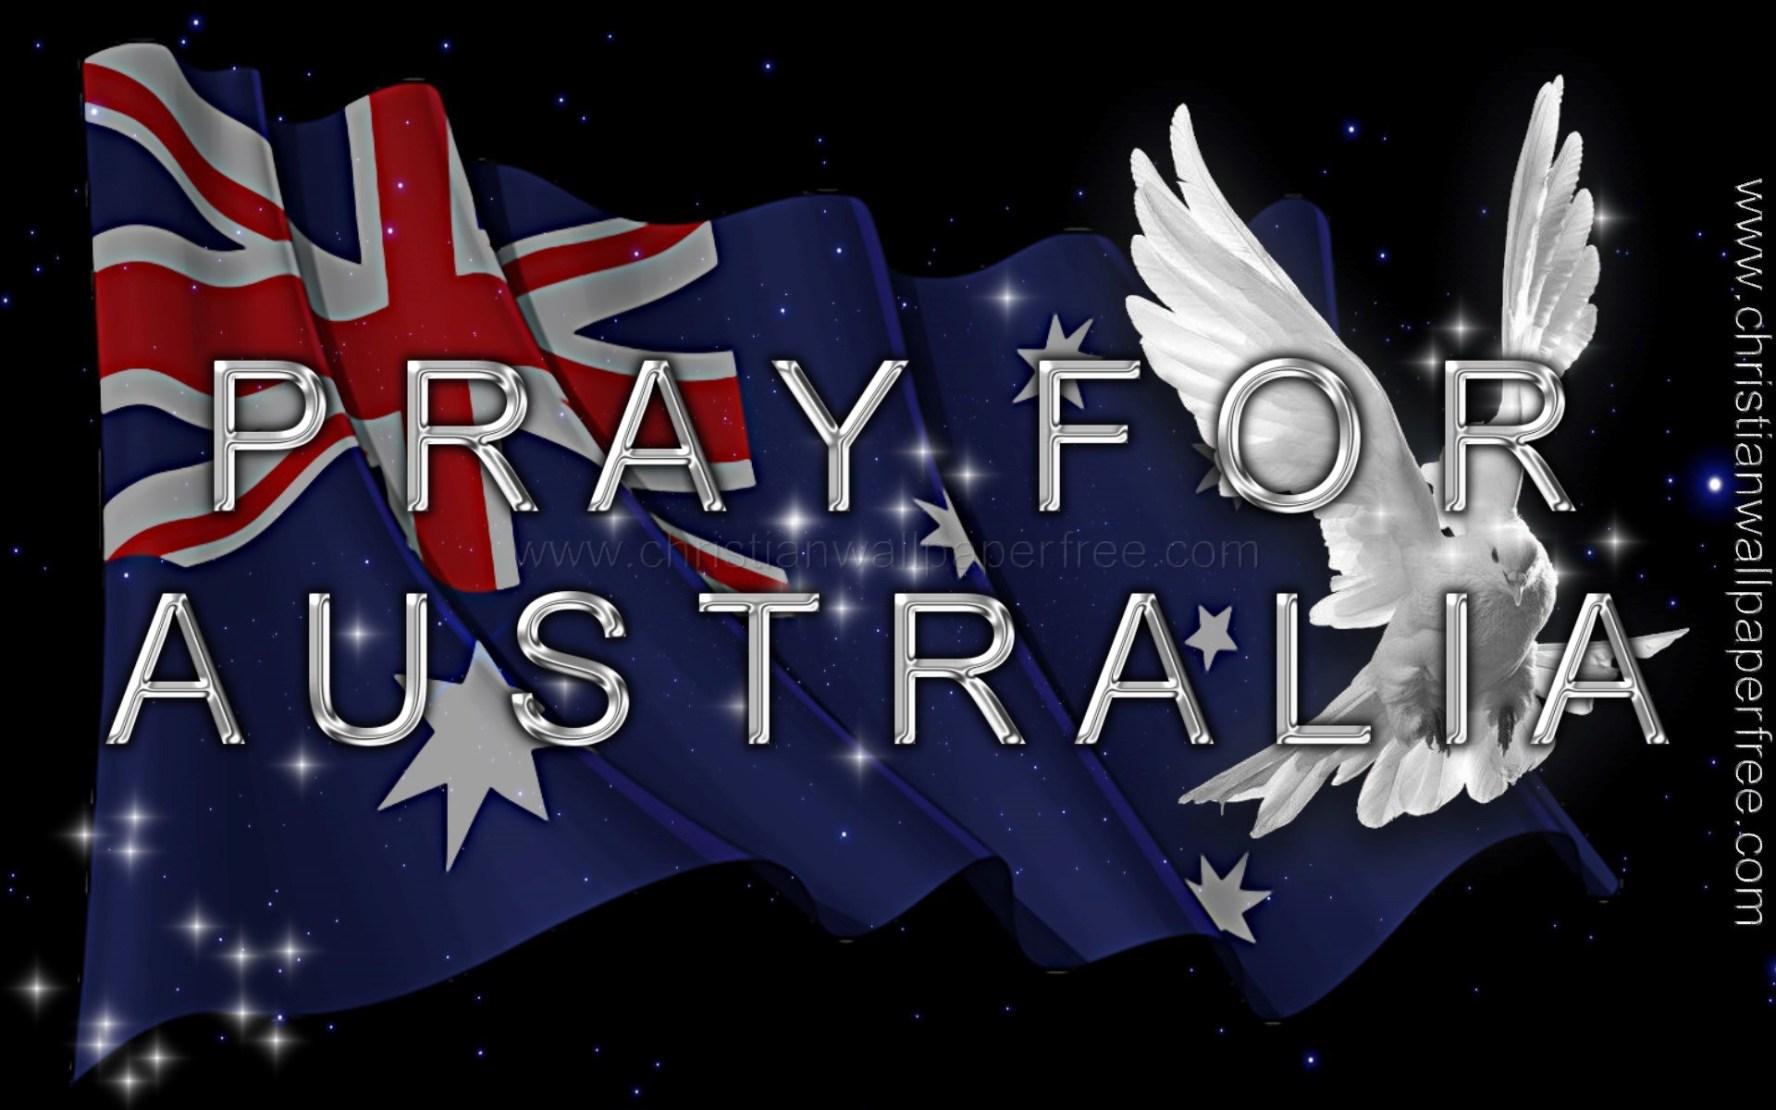 Pray for Australia Wallpaper Free